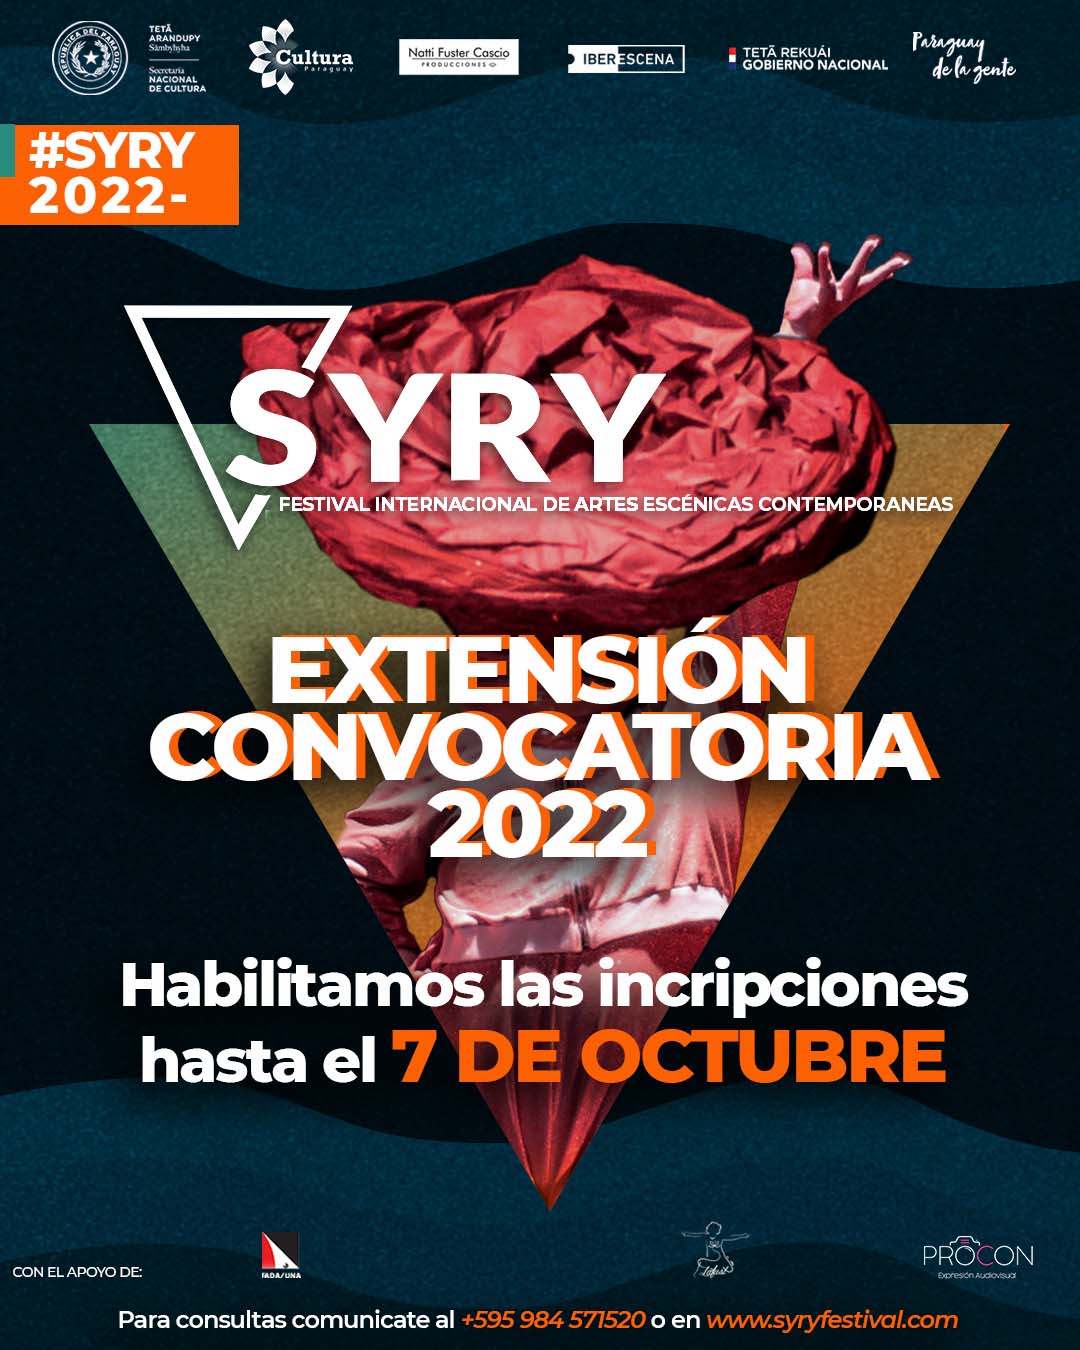 SYRY Festival Internacional de Artes Escénicas Contemporáneas extiende convocatoria hasta el 07 de octubre imagen